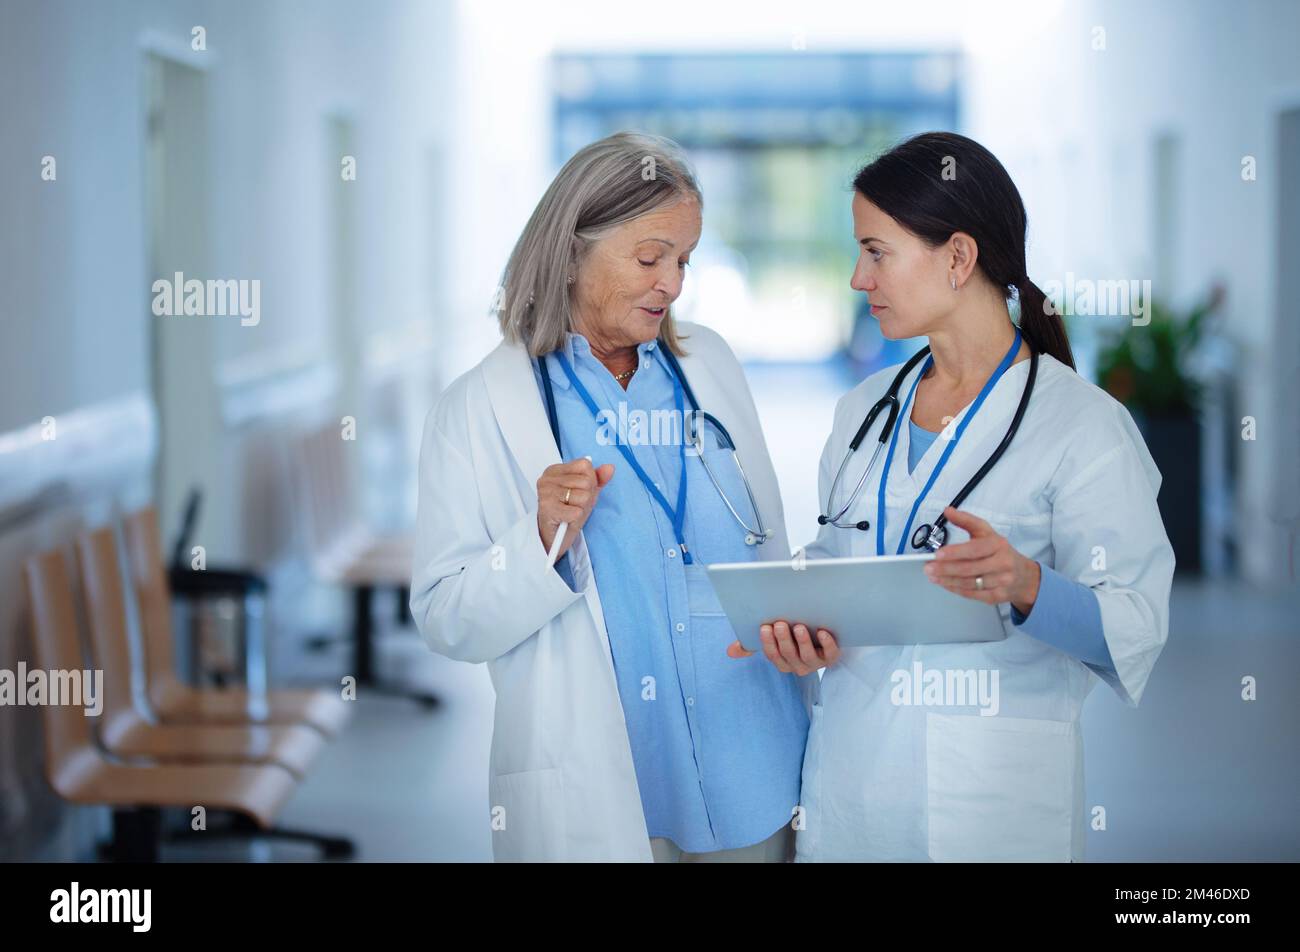 Un médecin plus âgé donne des conseils à sa jeune collègue, discutant dans le couloir de l'hôpital. Concept de soins de santé. Banque D'Images